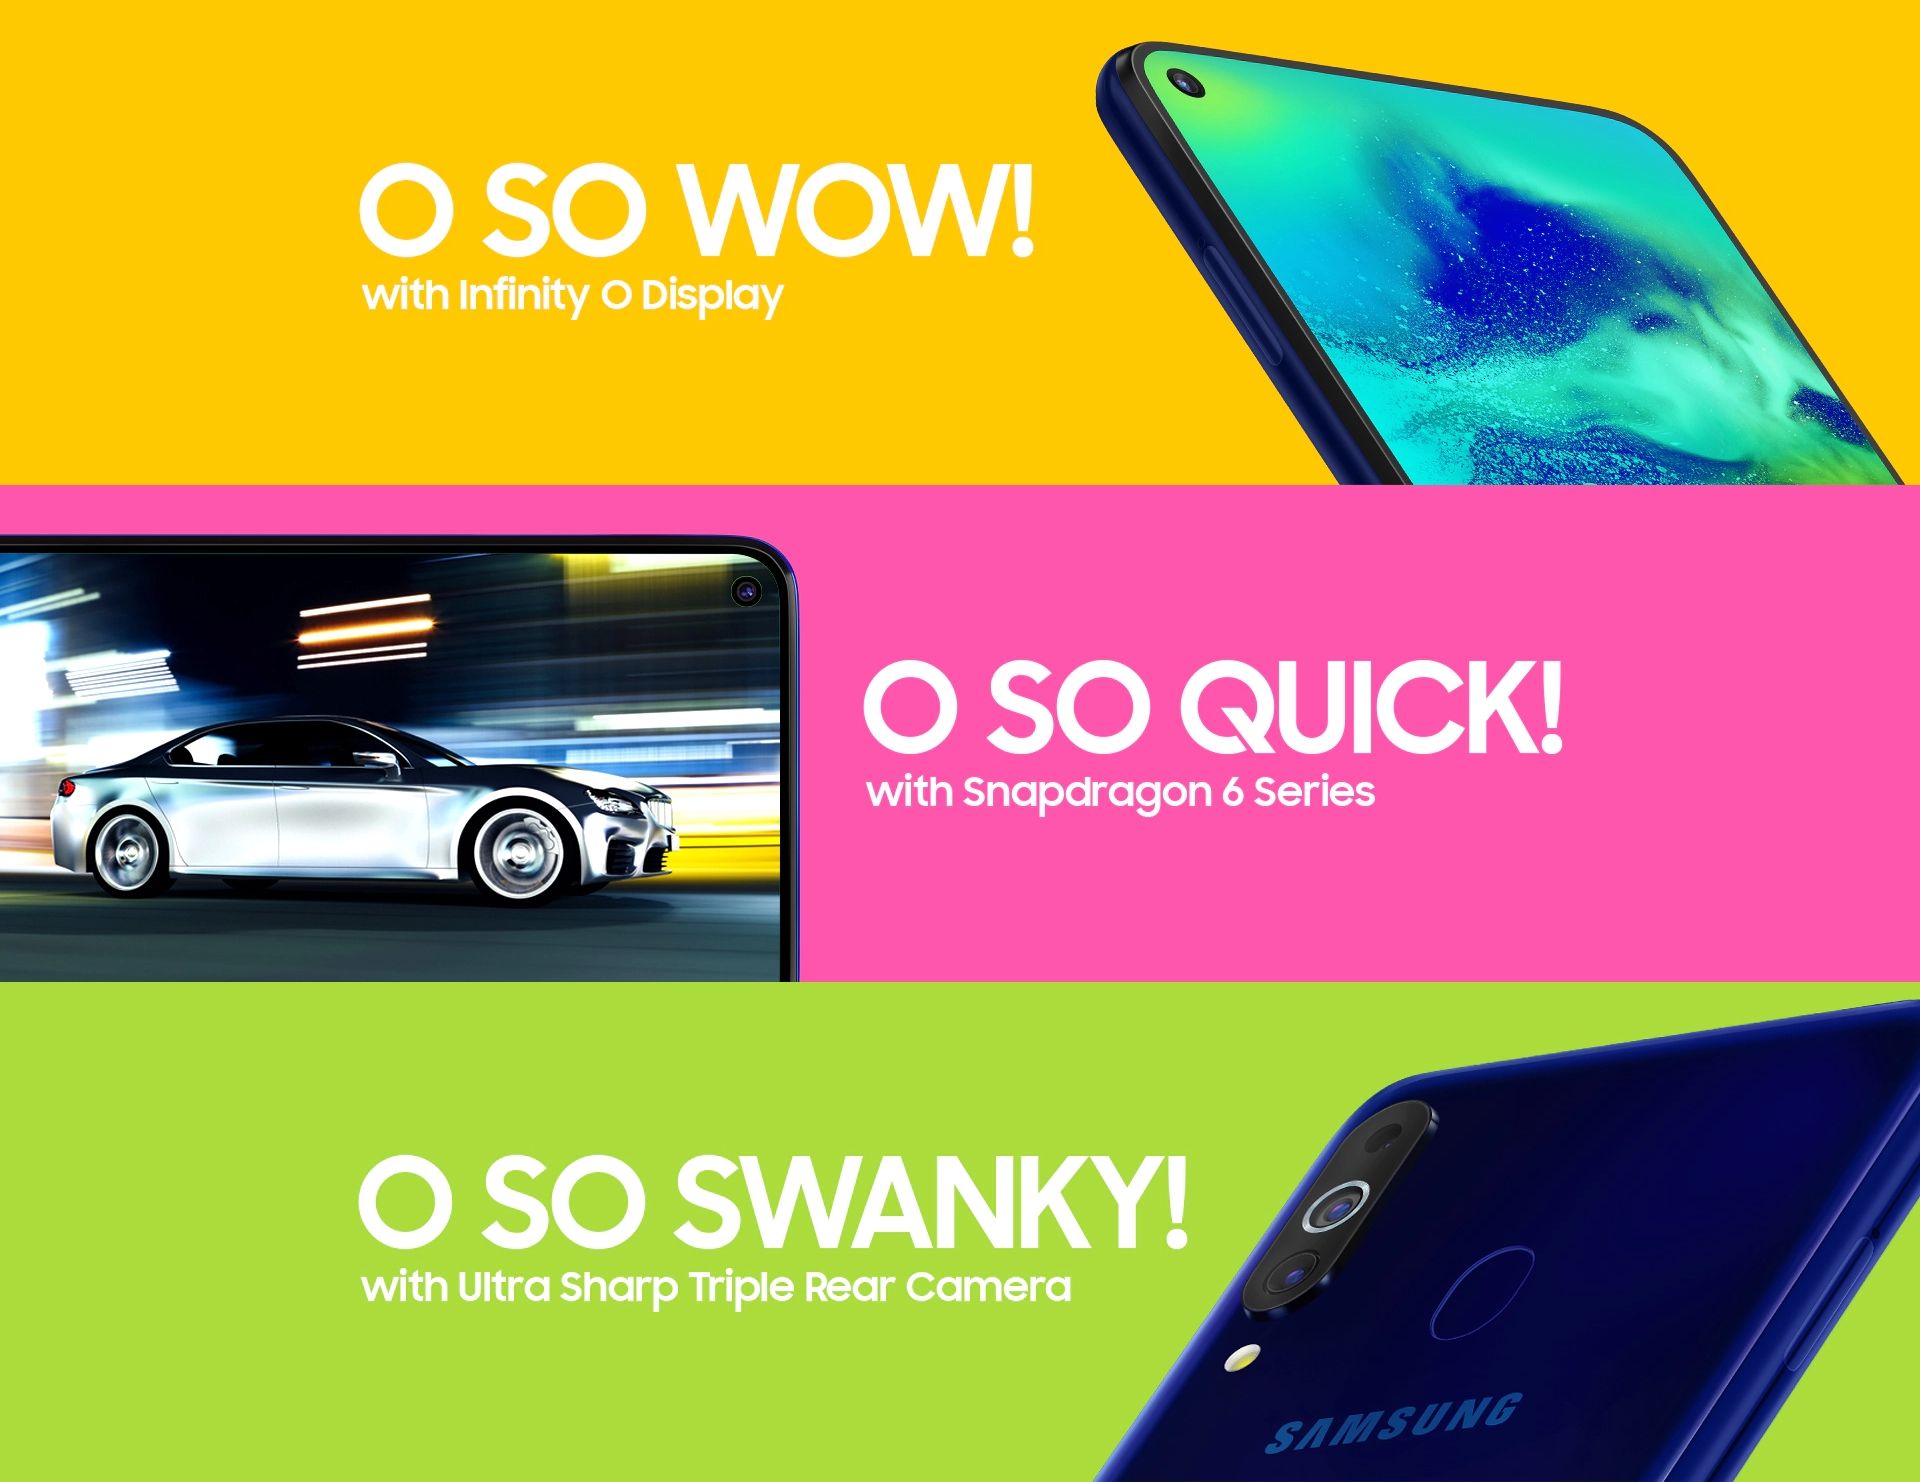 Poster promosi Galaxy M40 di situs resmi Samsung